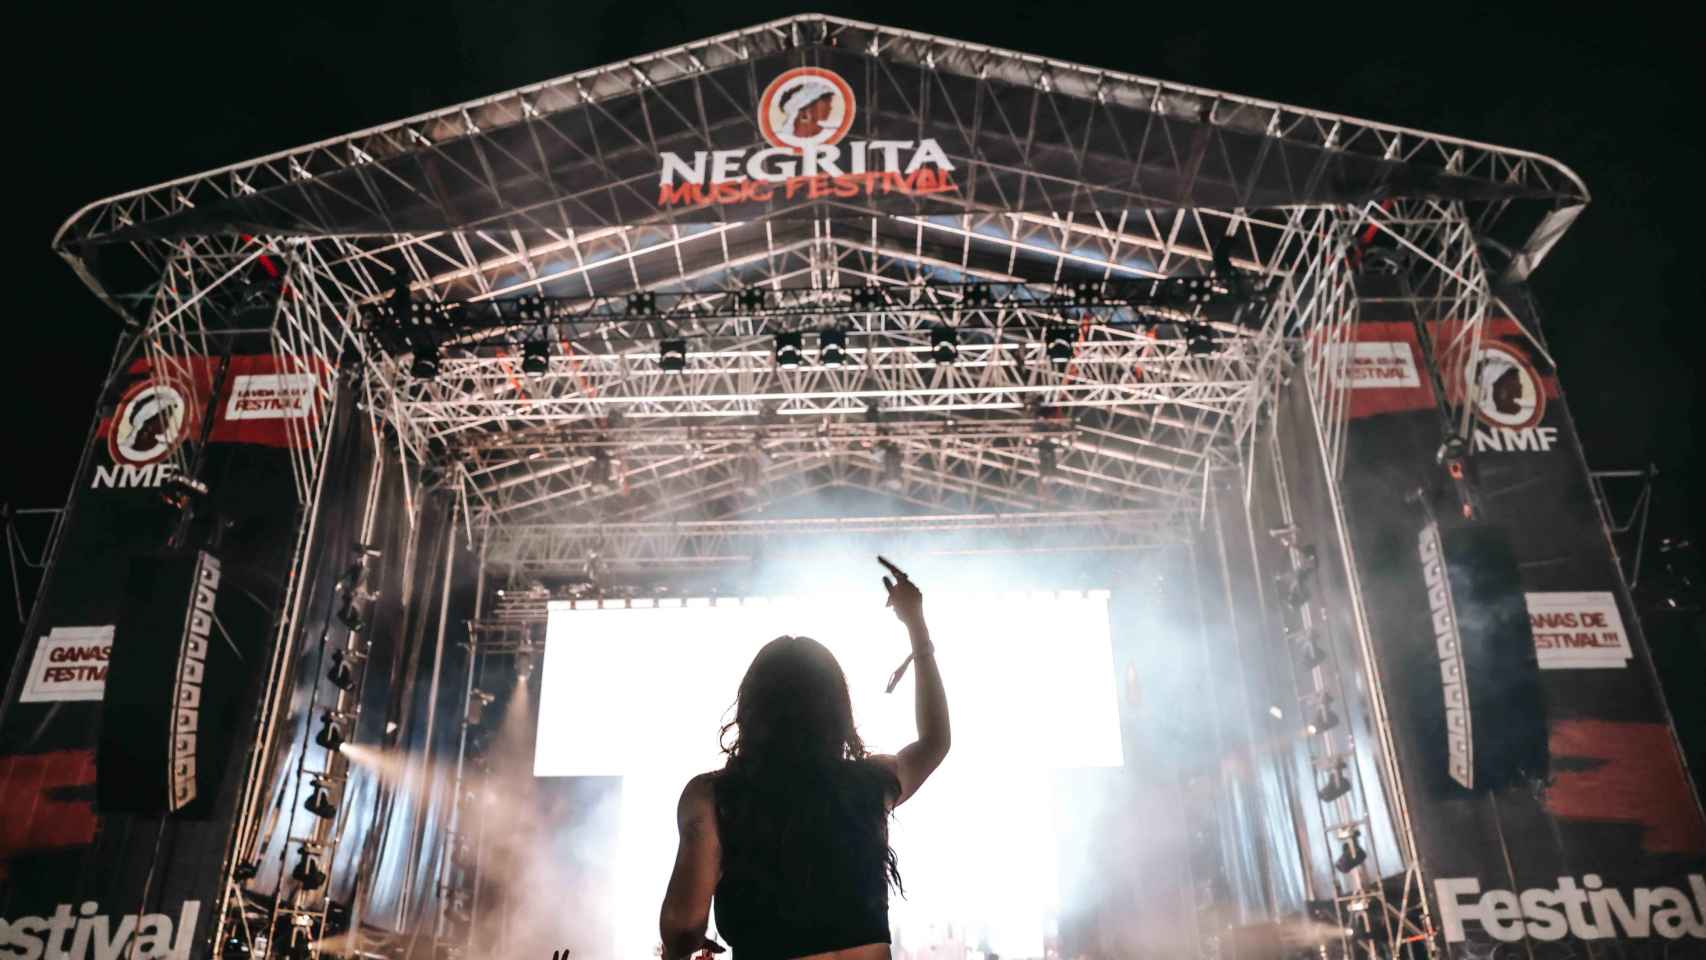 El Negrita Music Festival, en una edición anterior.